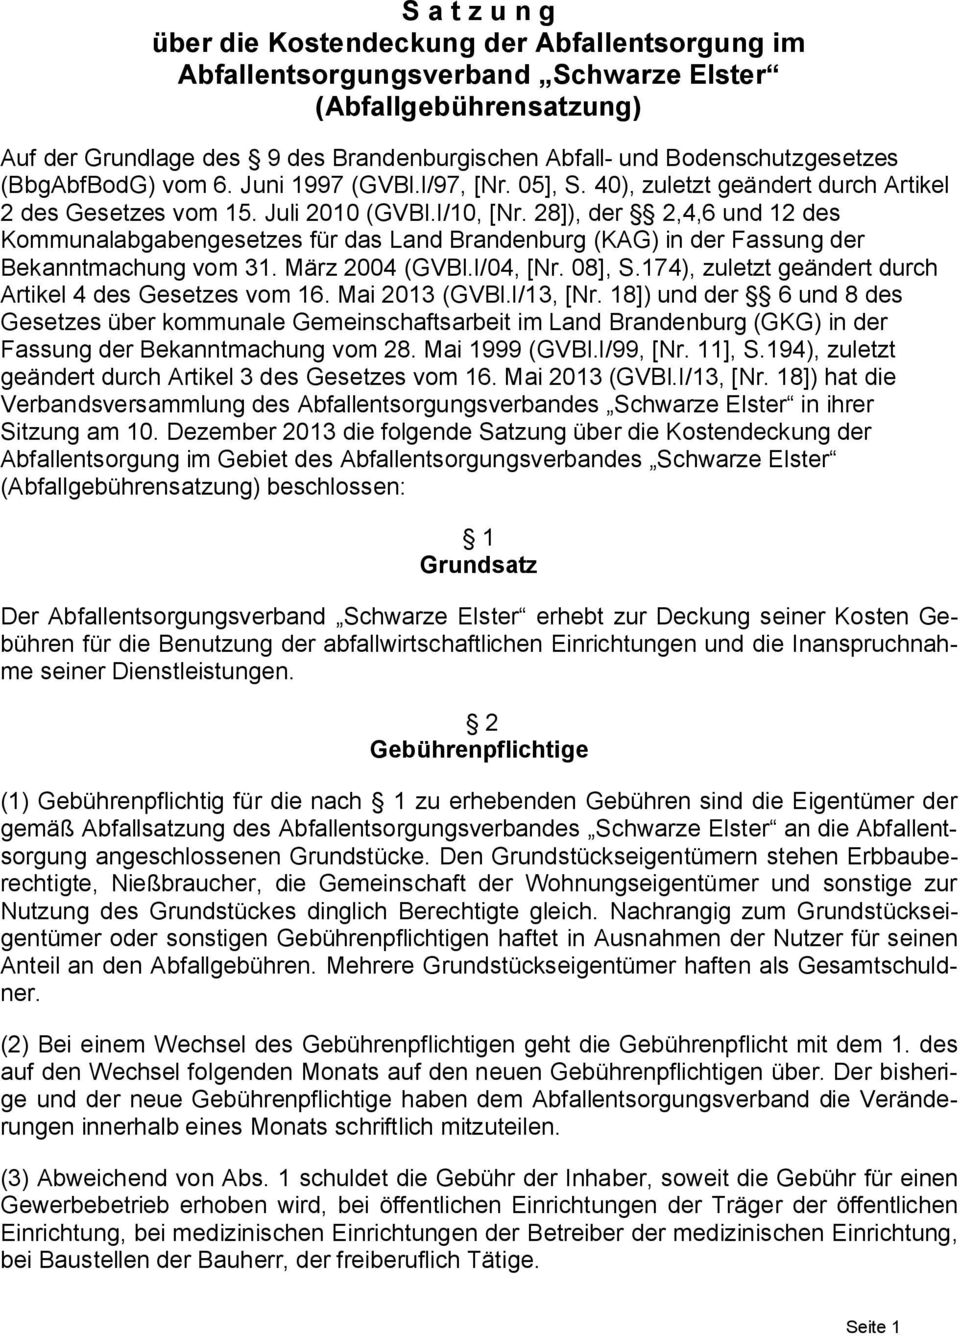 28]), der 2,4,6 und 12 des Kommunalabgabengesetzes für das Land Brandenburg (KAG) in der Fassung der Bekanntmachung vom 31. März 2004 (GVBl.I/04, [Nr. 08], S.